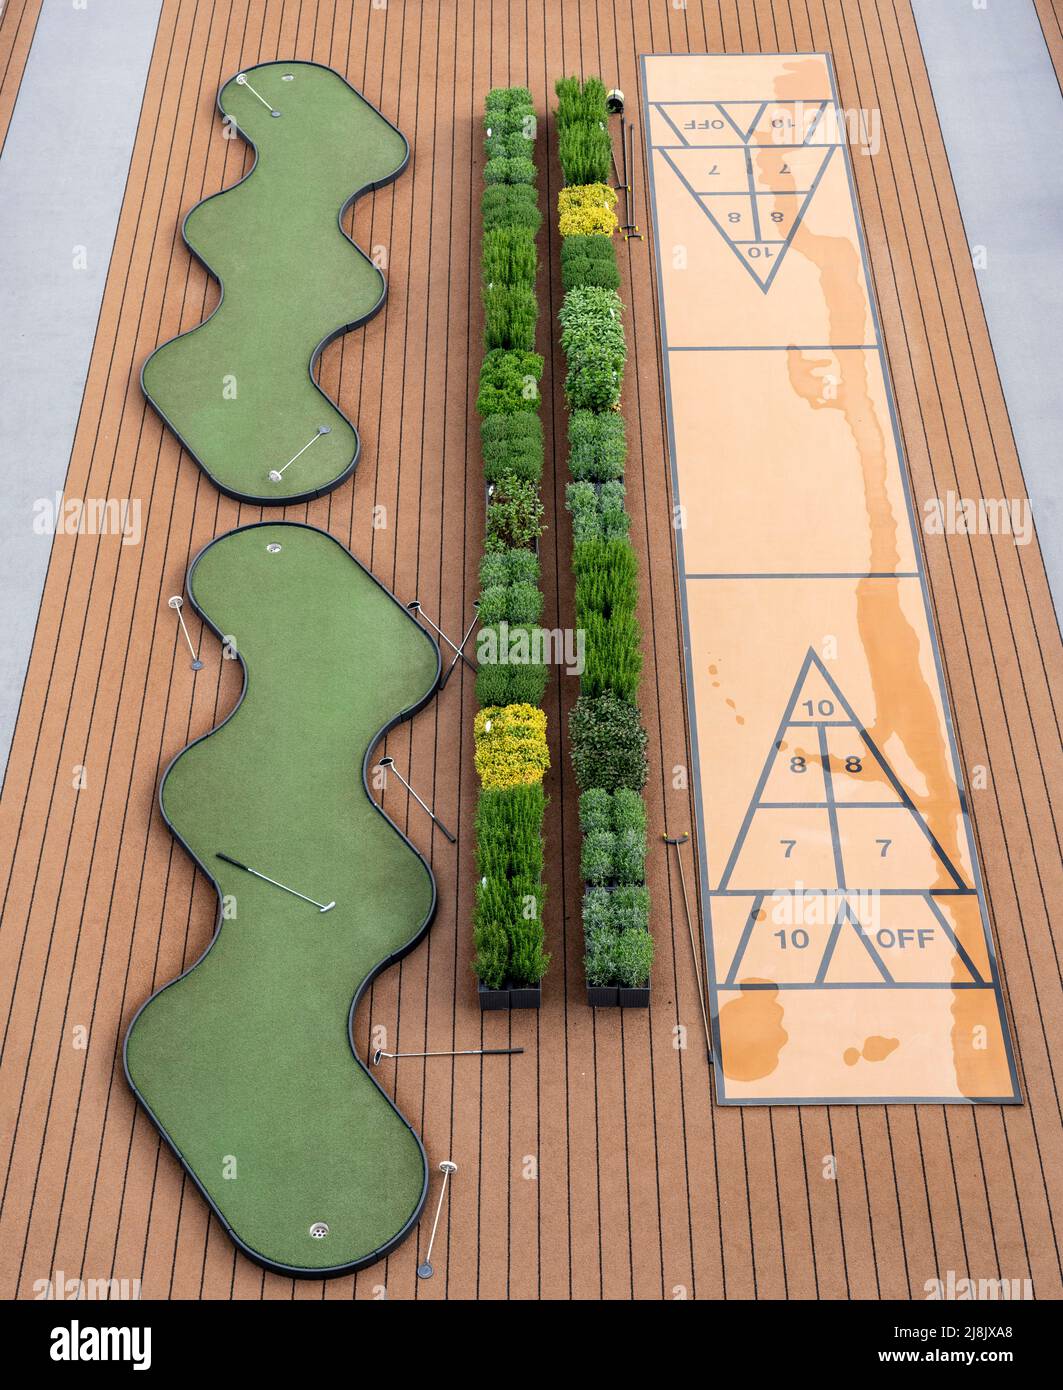 Ponte all'aperto, ponte superiore, ponte all'aperto di una nave da crociera fluviale, putting green e shuffleboard game sul ponte, Foto Stock